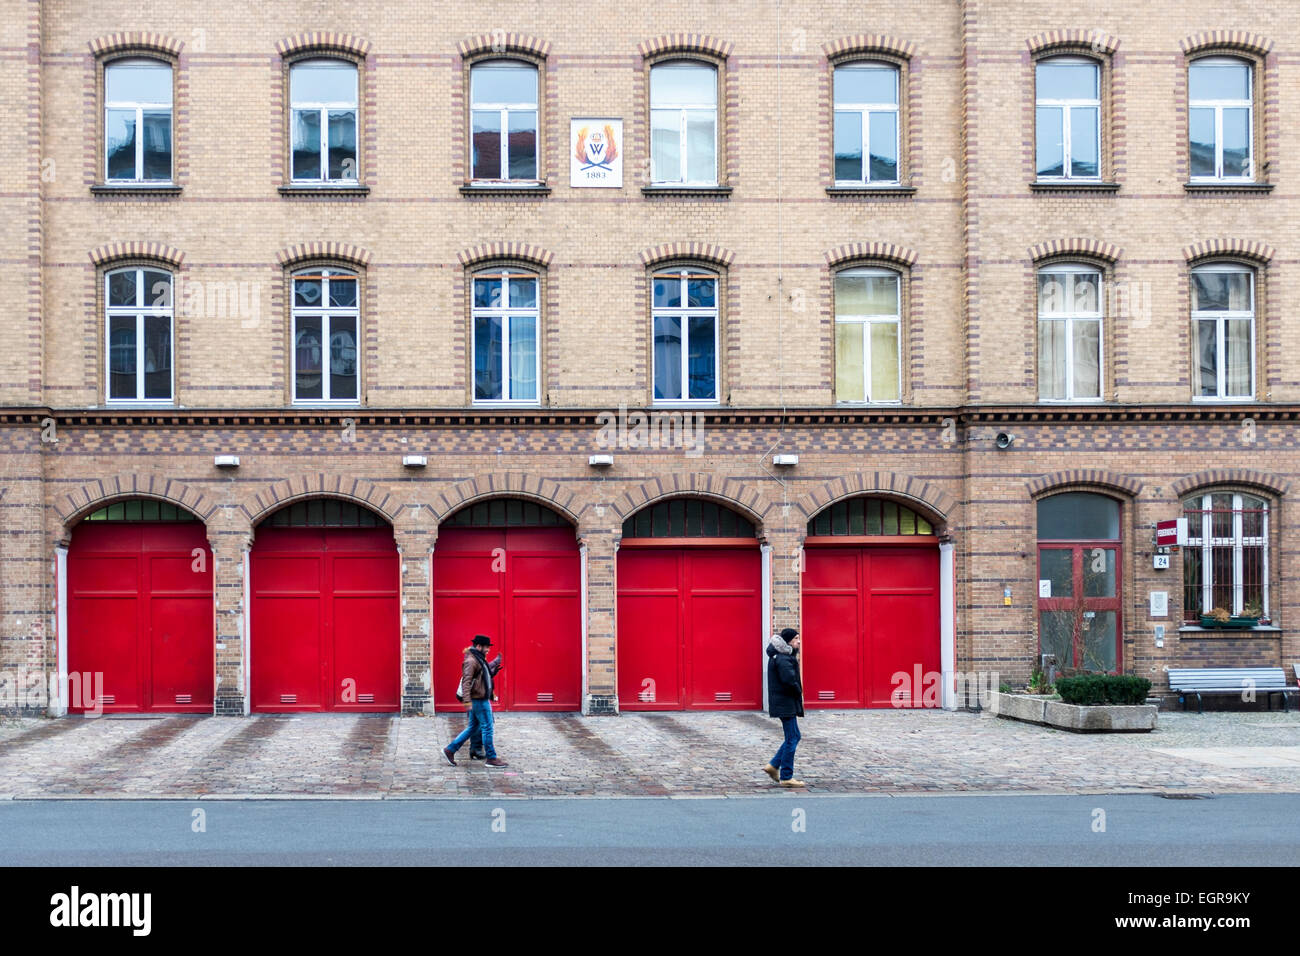 Ancienne caserne de Berlin (1883) toujours en activité - Bâtiment en brique rouge avec portes en Oderberger Strasse, Berlin Prenzlauerberg, Banque D'Images